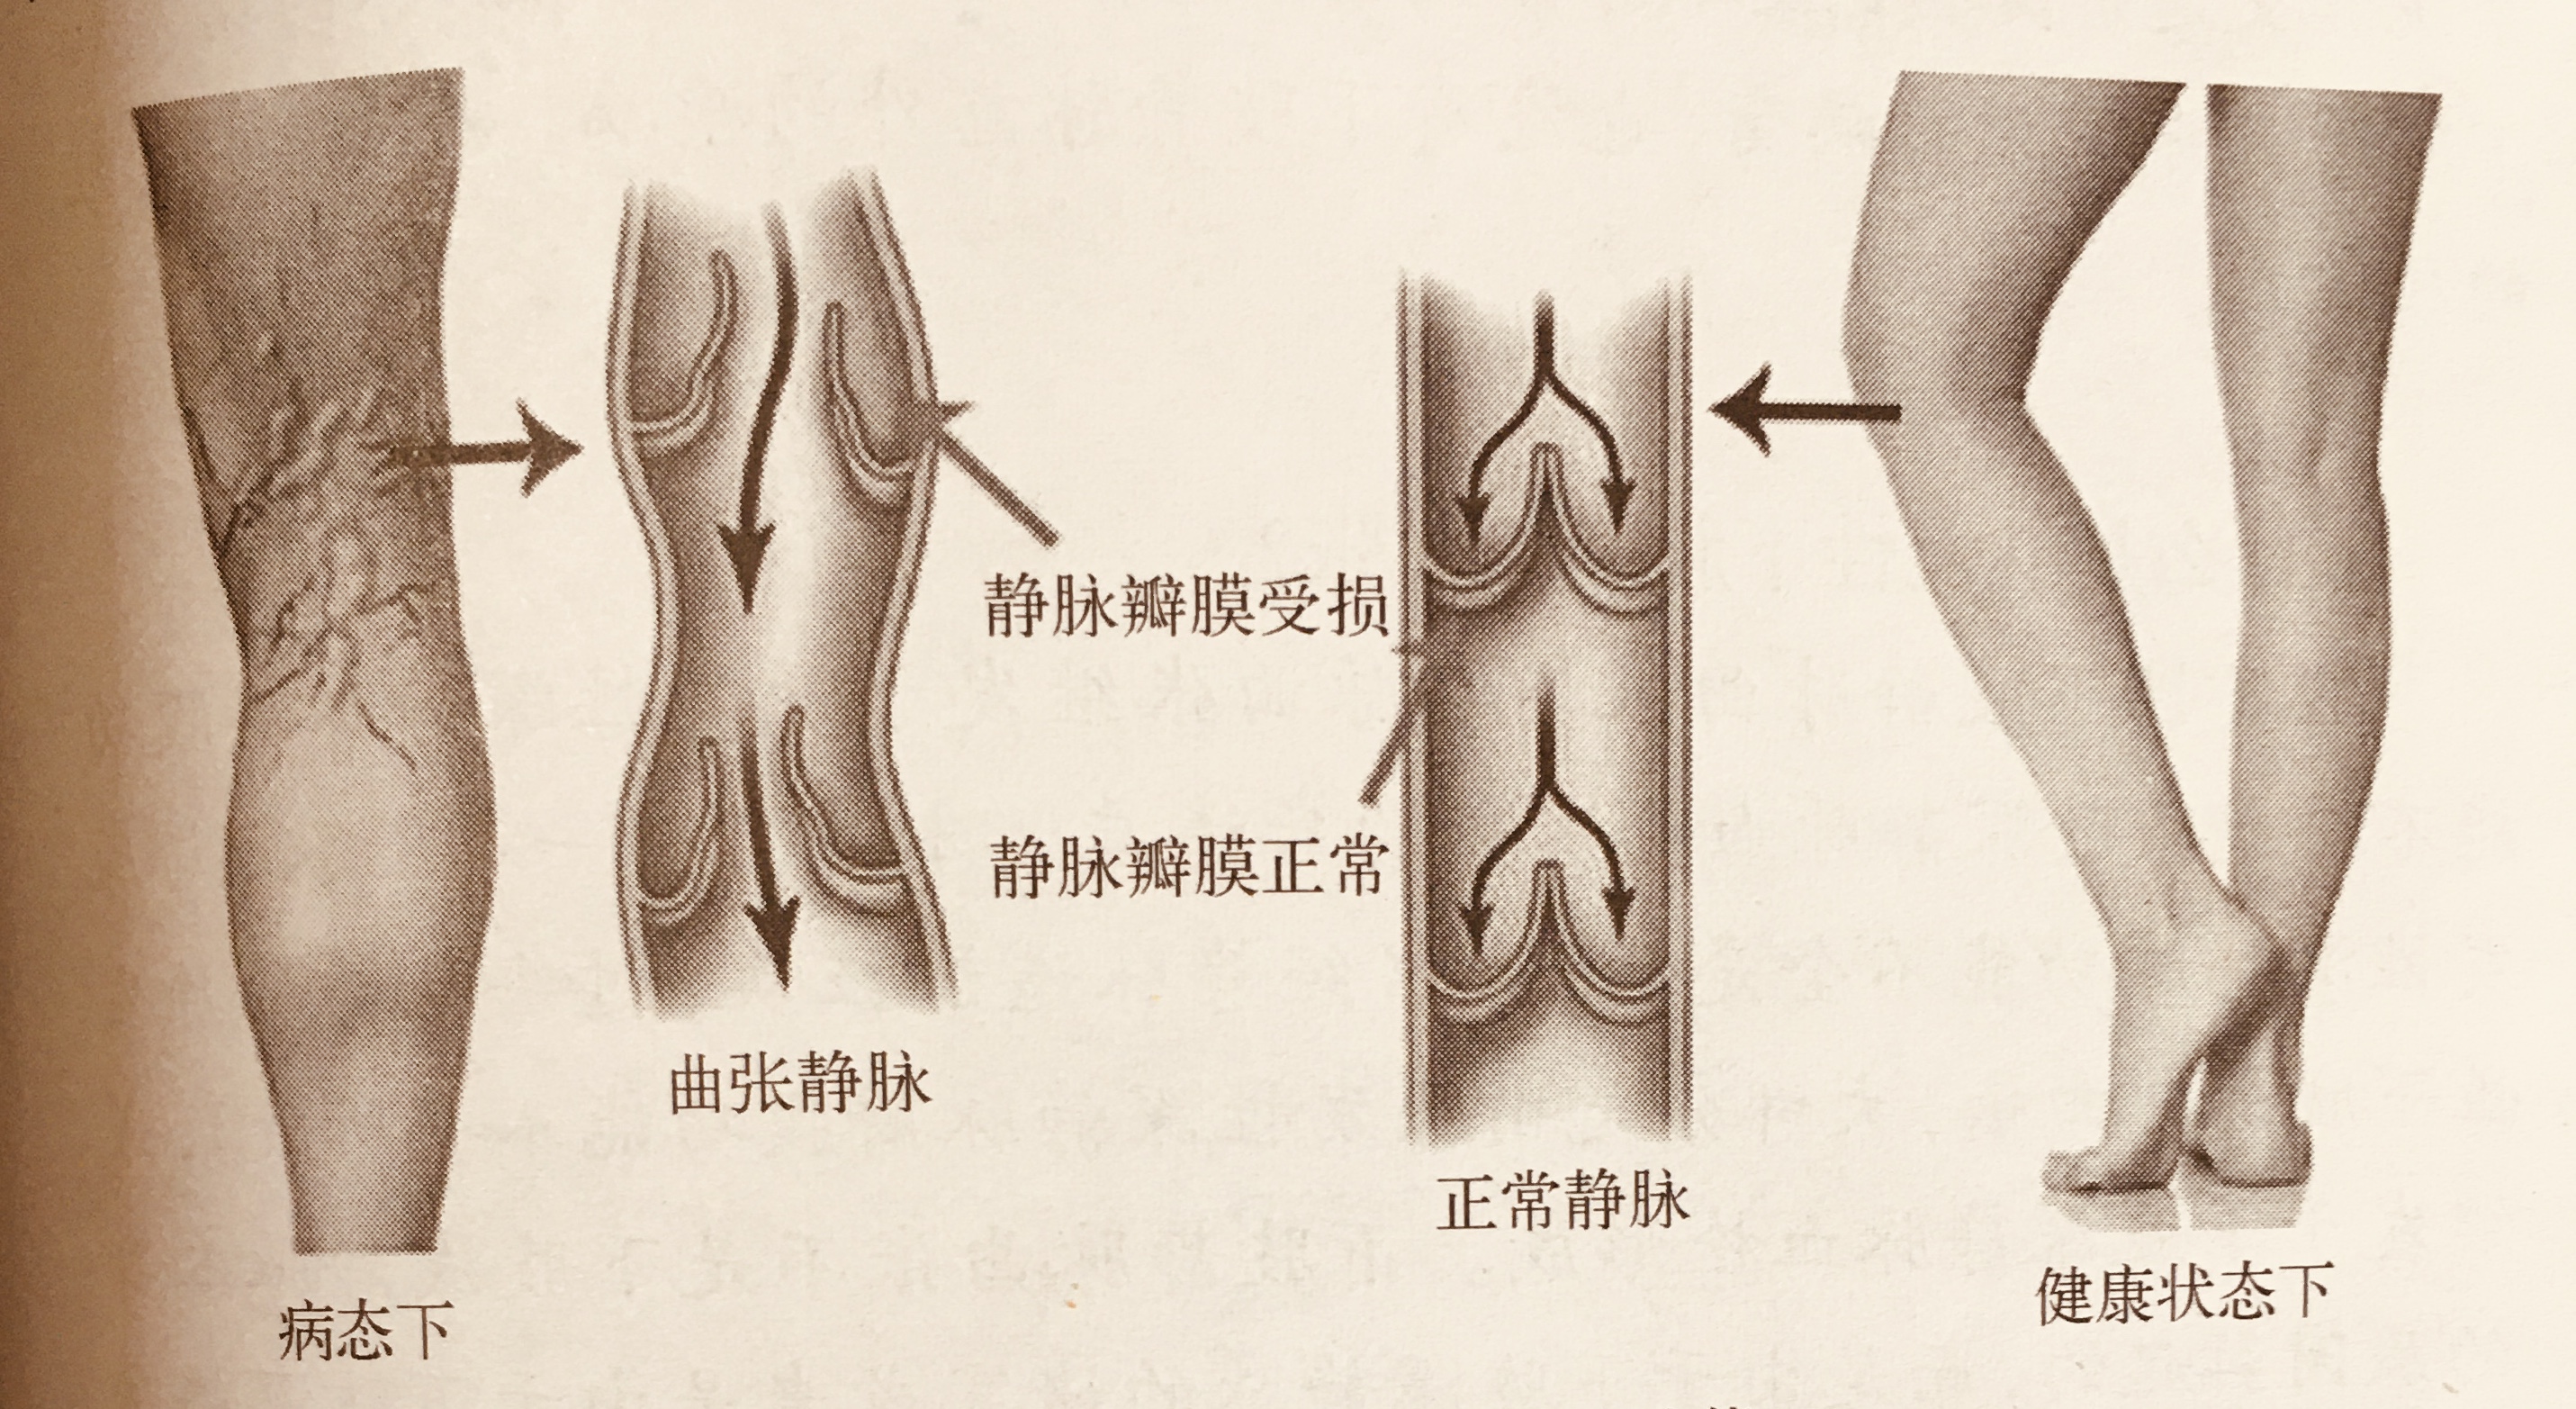 静脉瓣膜示意图图片